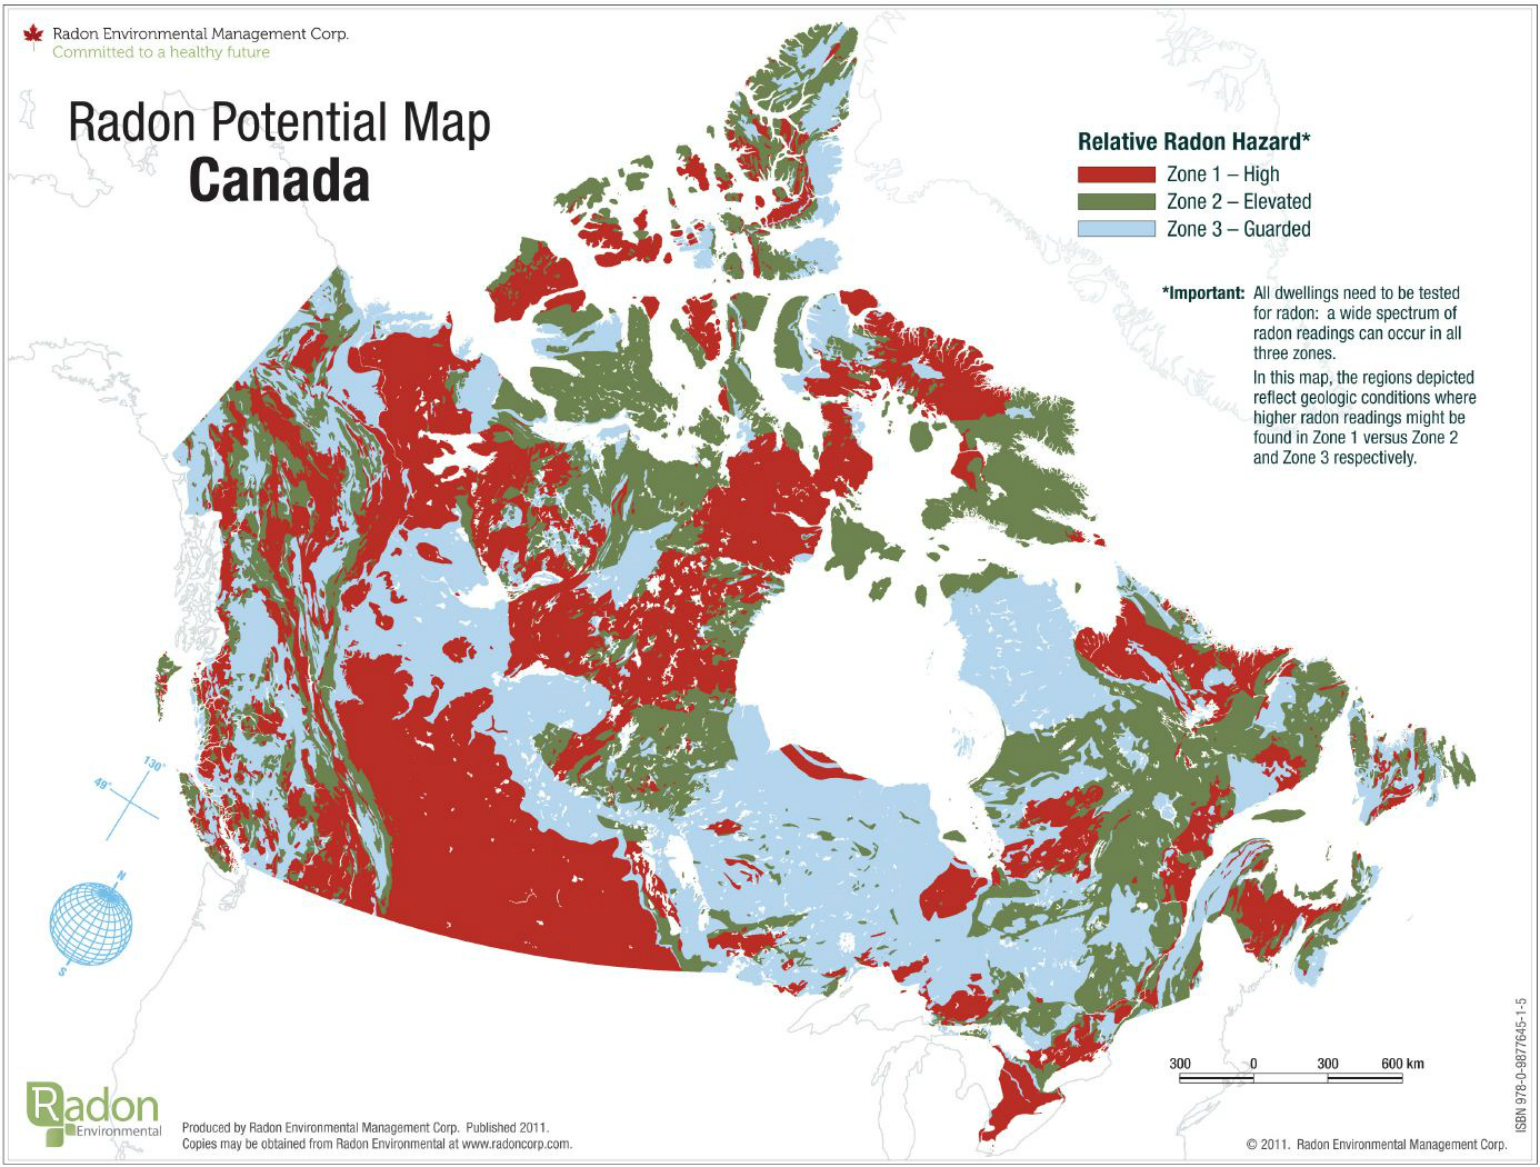 Carte géologique du Canada représentant les zones touchées par le radon